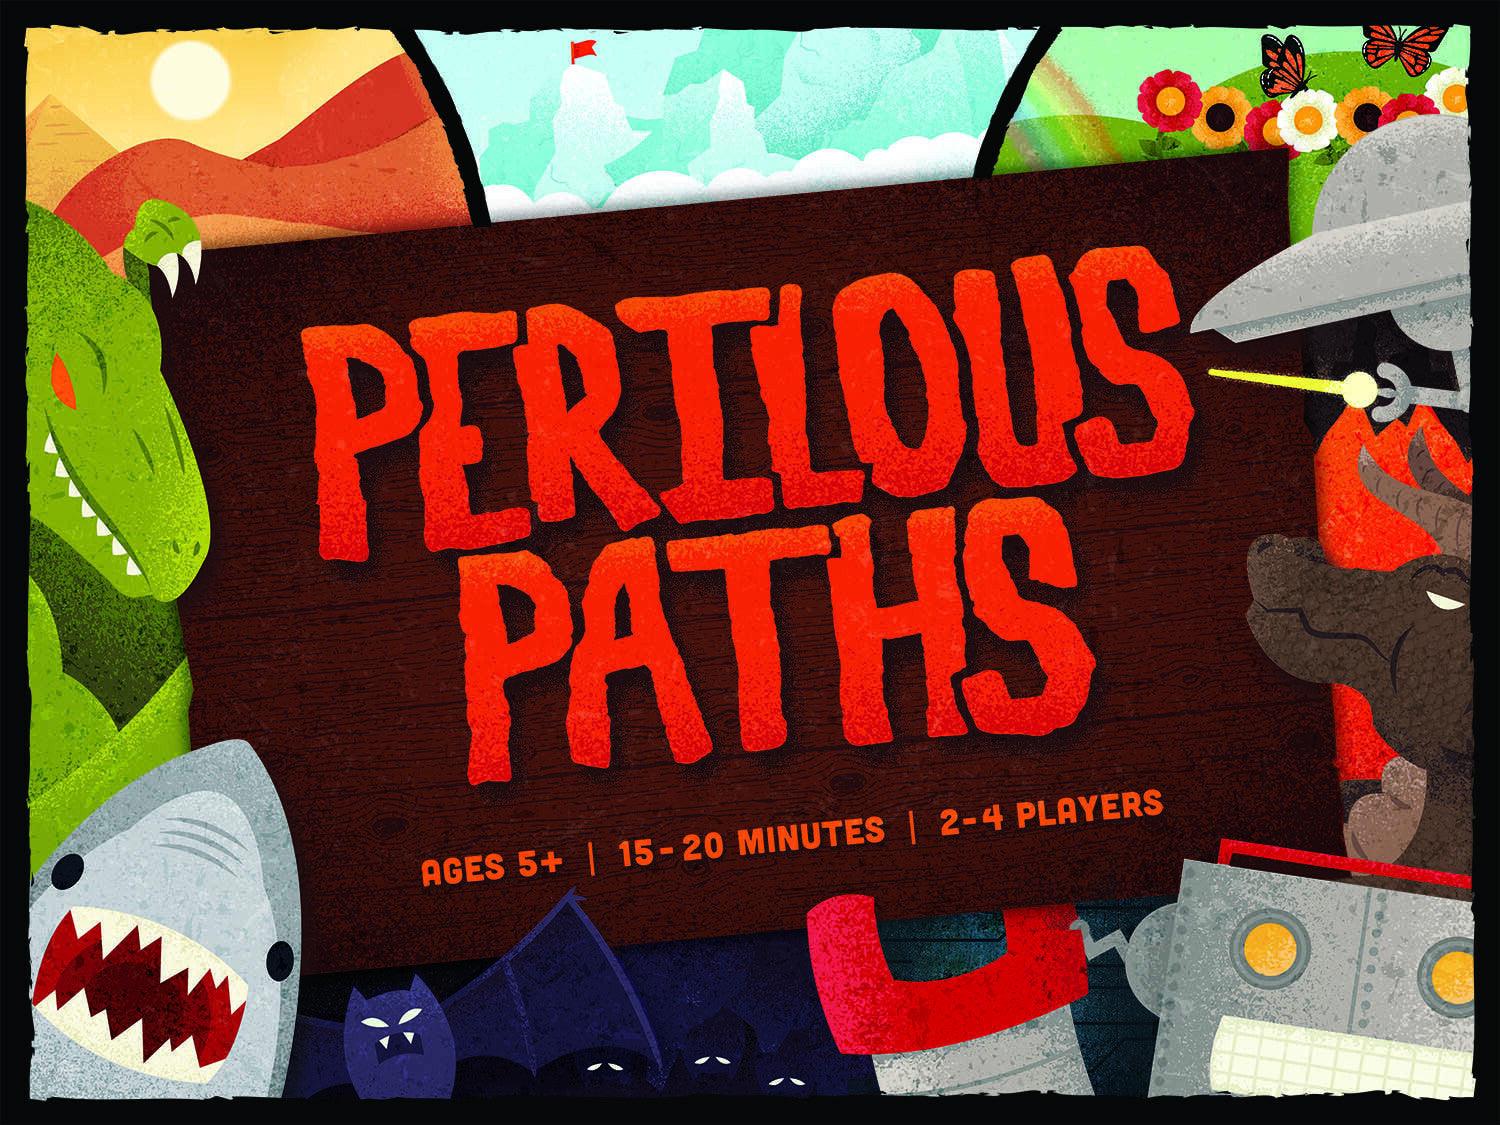 VR-96759 Perilous Paths - Beyond My Control Games - Titan Pop Culture